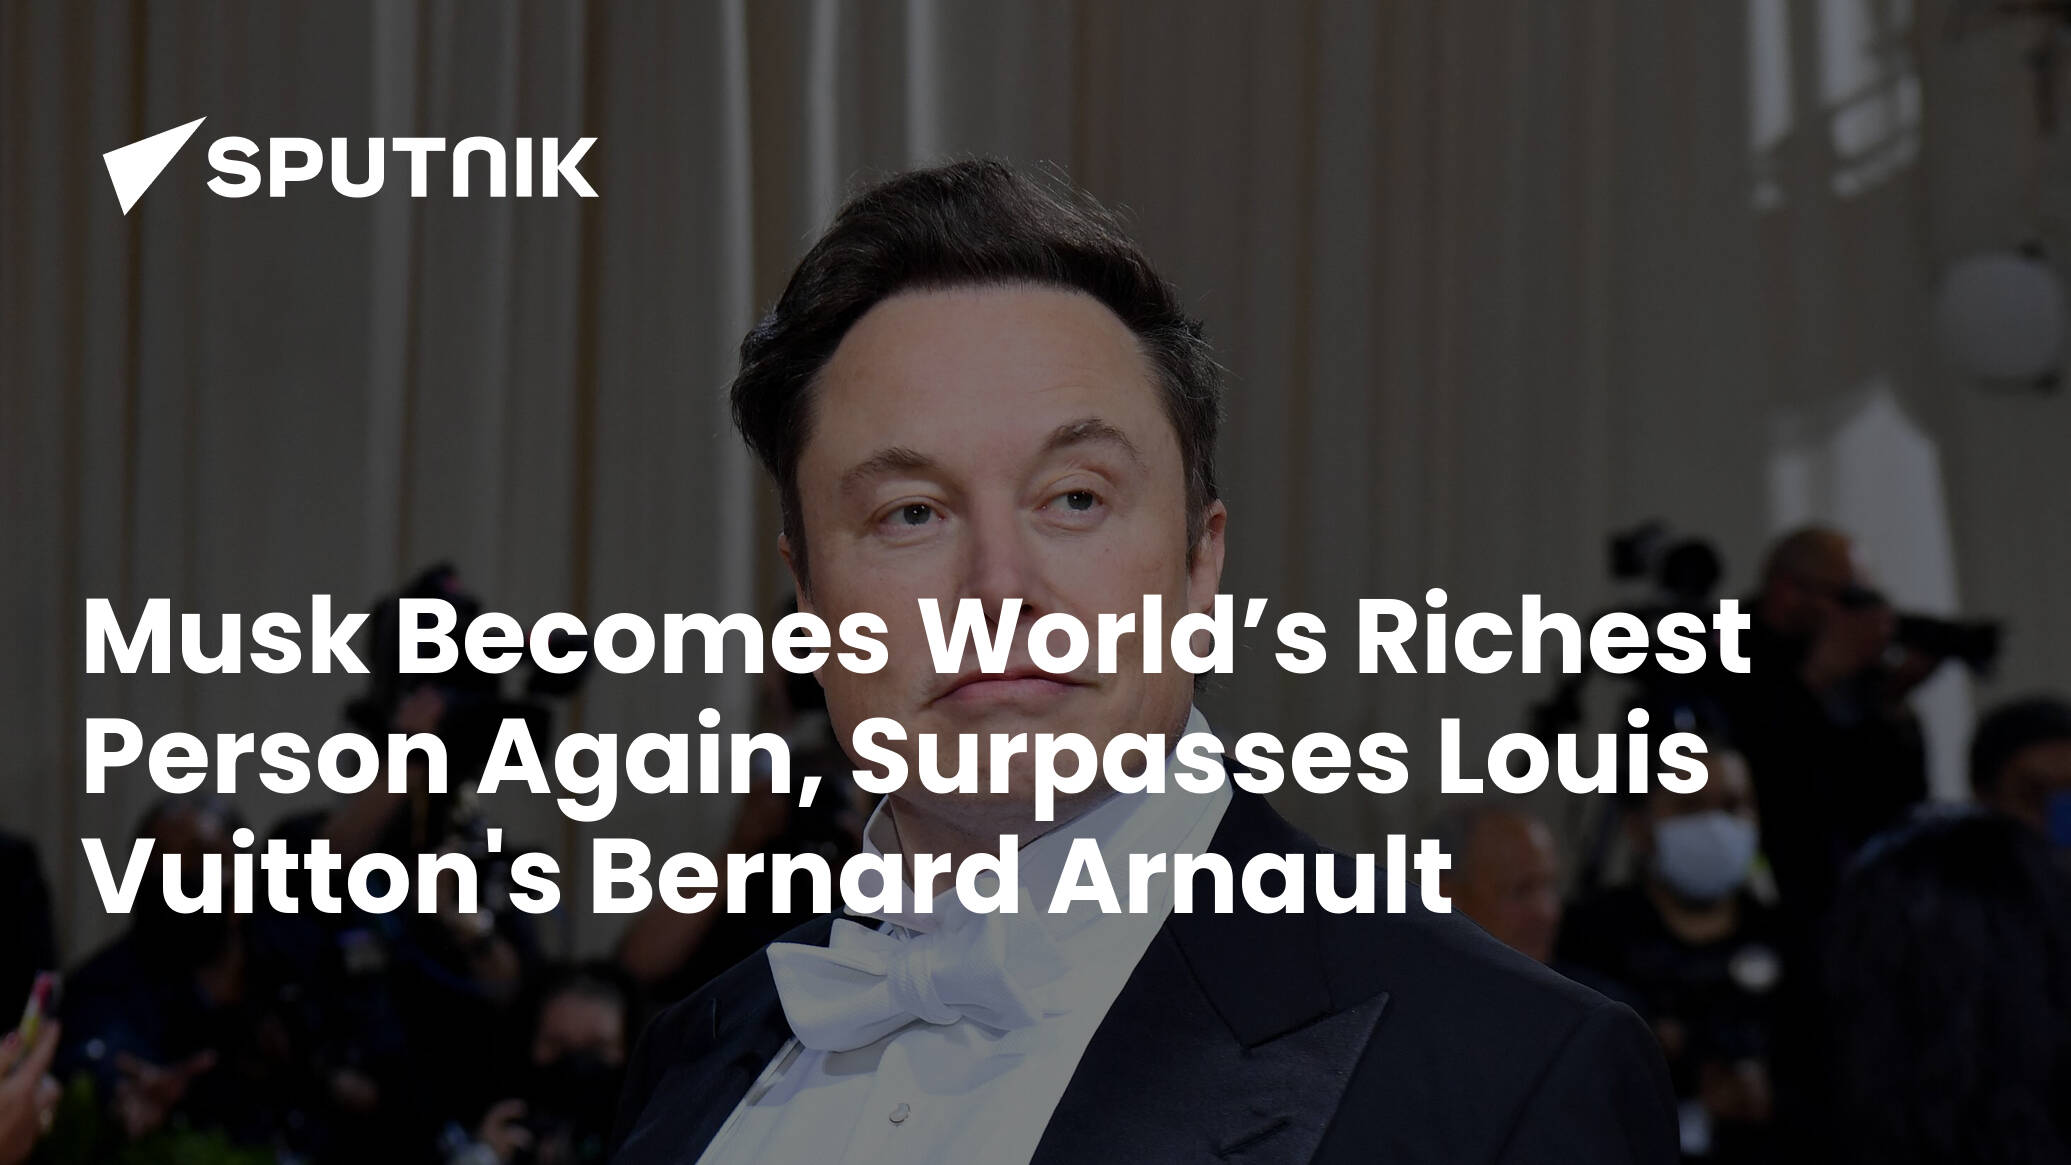 Bernard Arnault Surpasses Elon Musk to Become World's Richest